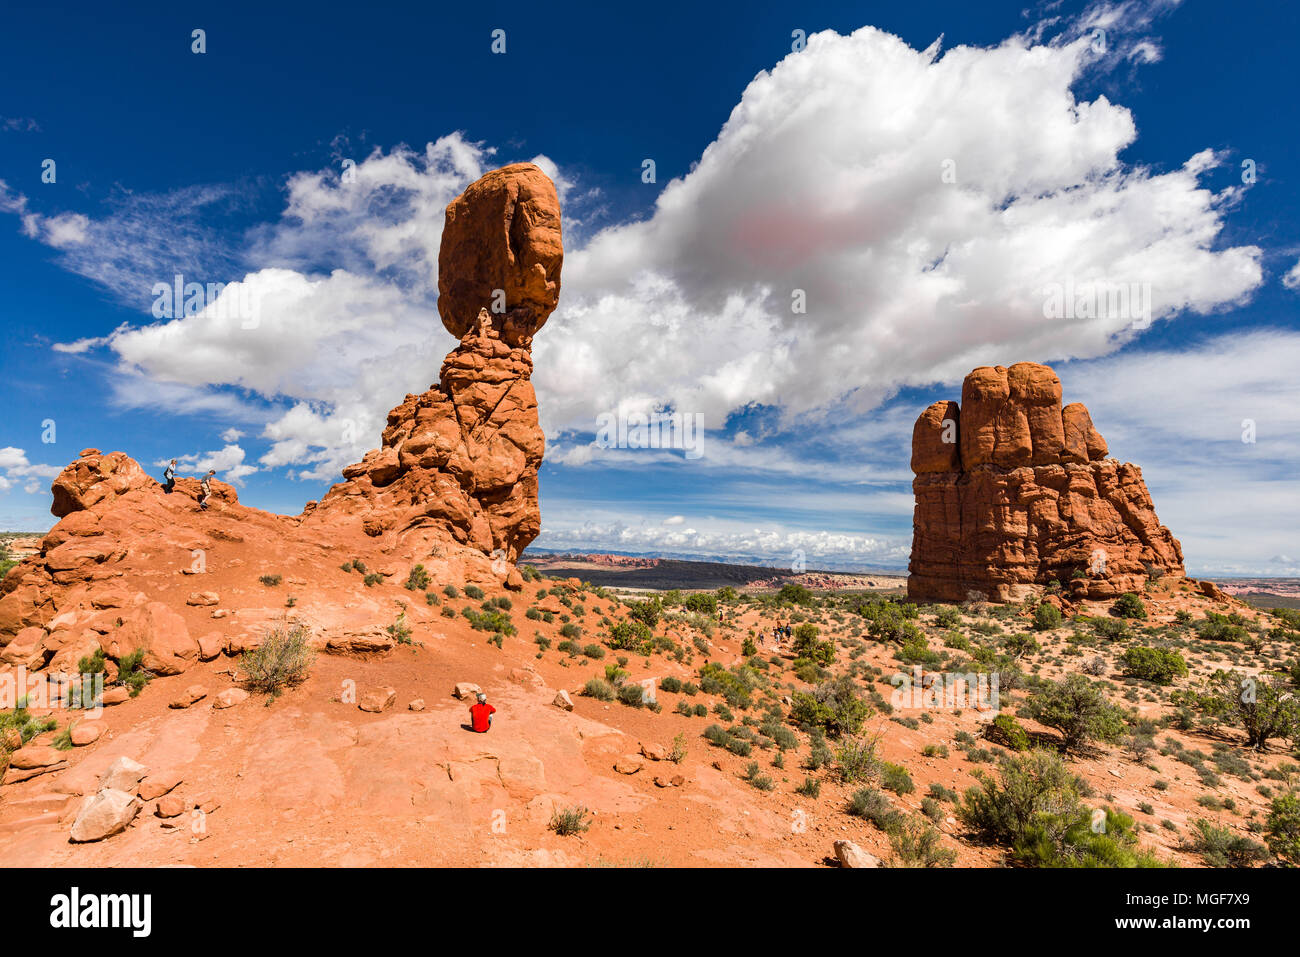 Vista della roccia equilibrato in Arches National Park con i turisti a passeggiare, Utah, Stati Uniti d'America Foto Stock